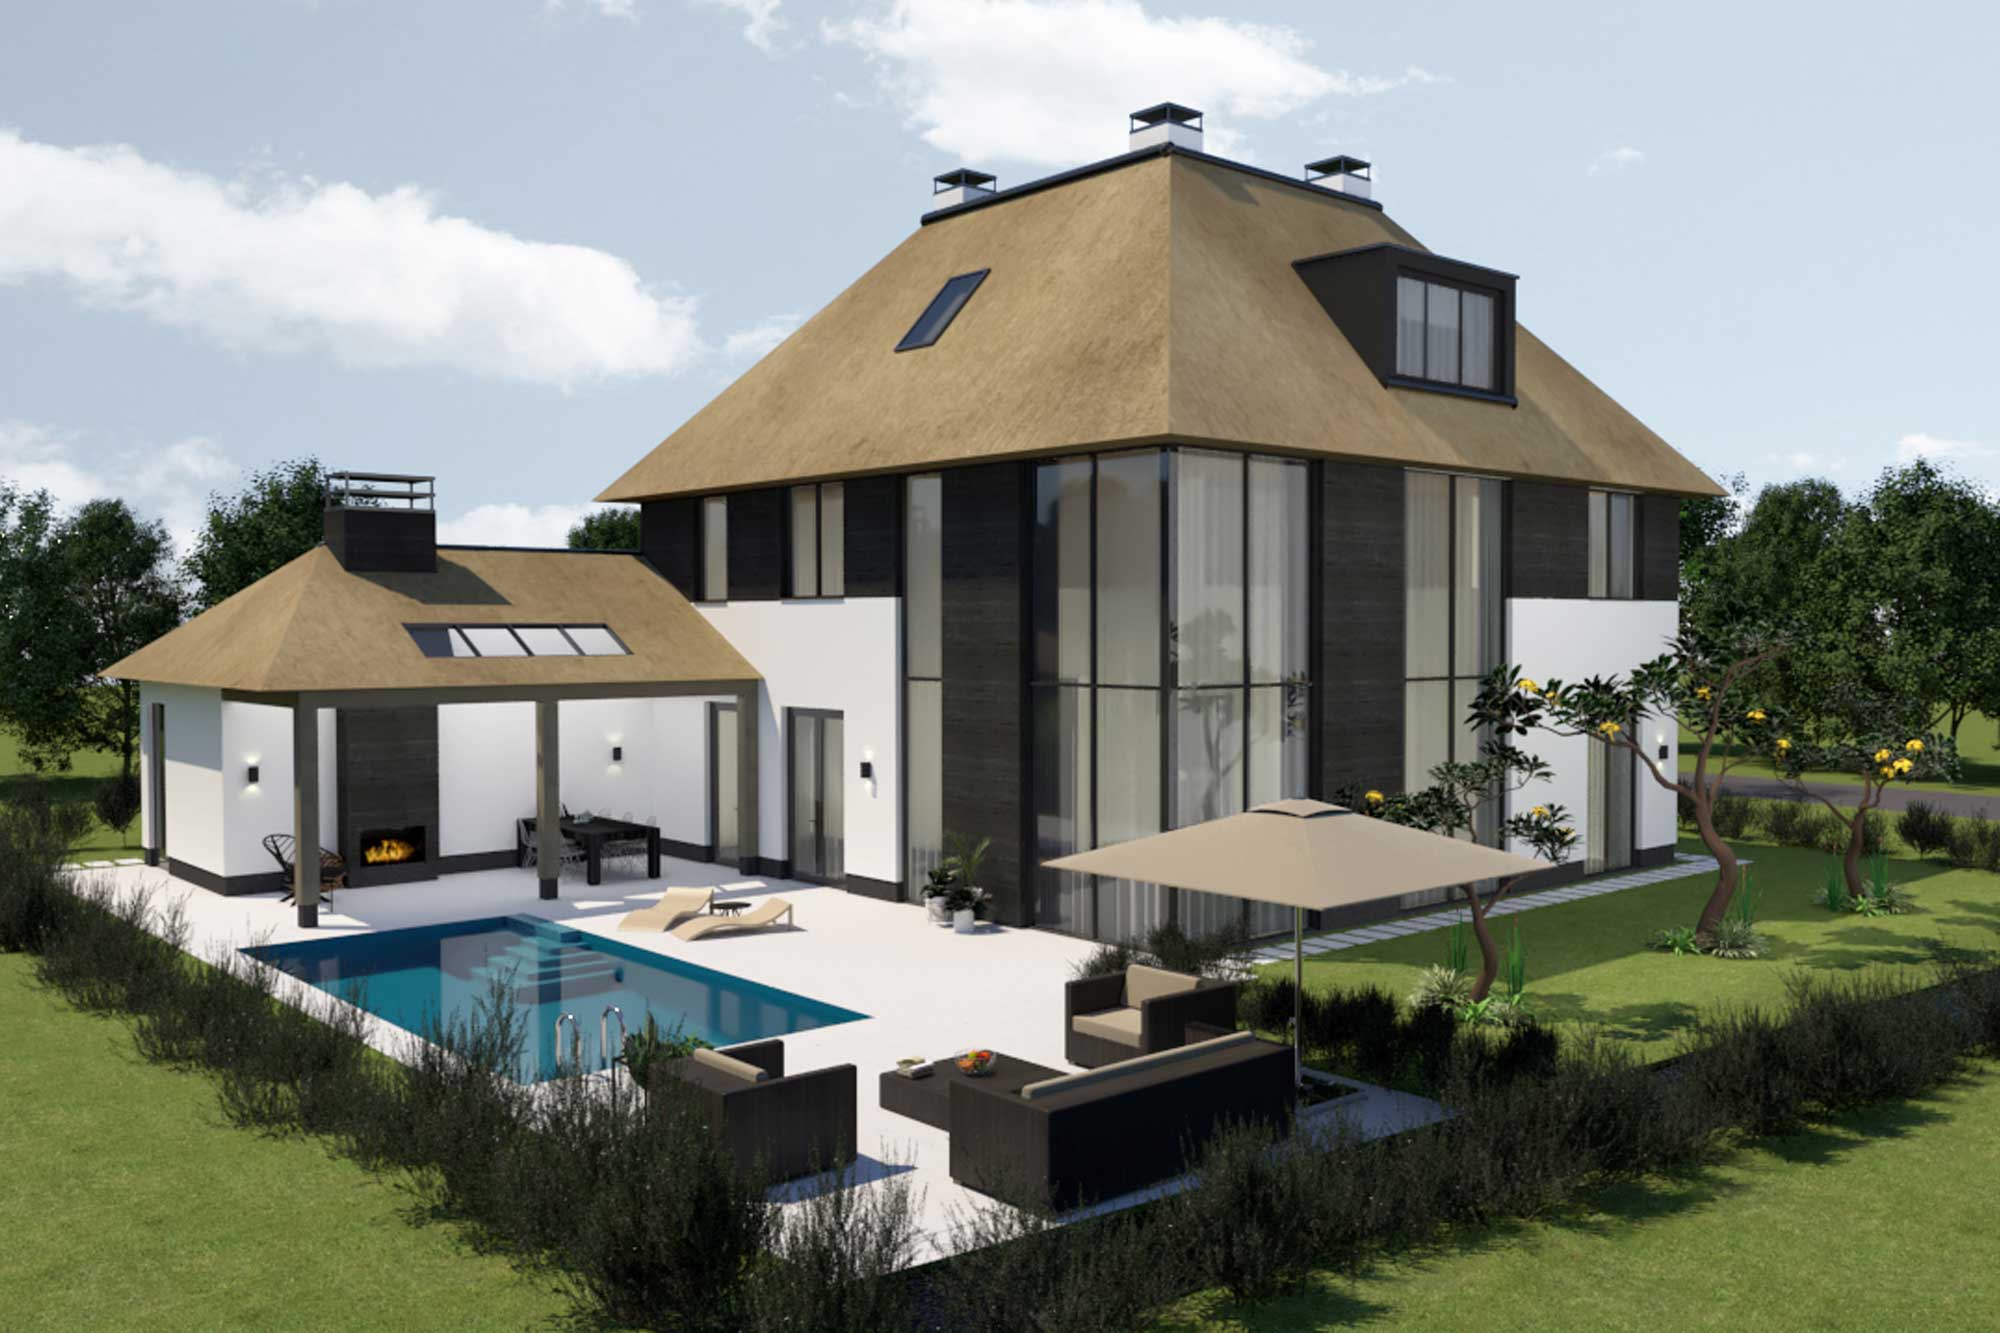 Nieuwbouw villa met rietenkap in Utrecht omgeving ontwerp door rchitect Maxim Winkelaar uit Amsterdam verzorgt het ontwerp en interieurontwerp met vergunningen.